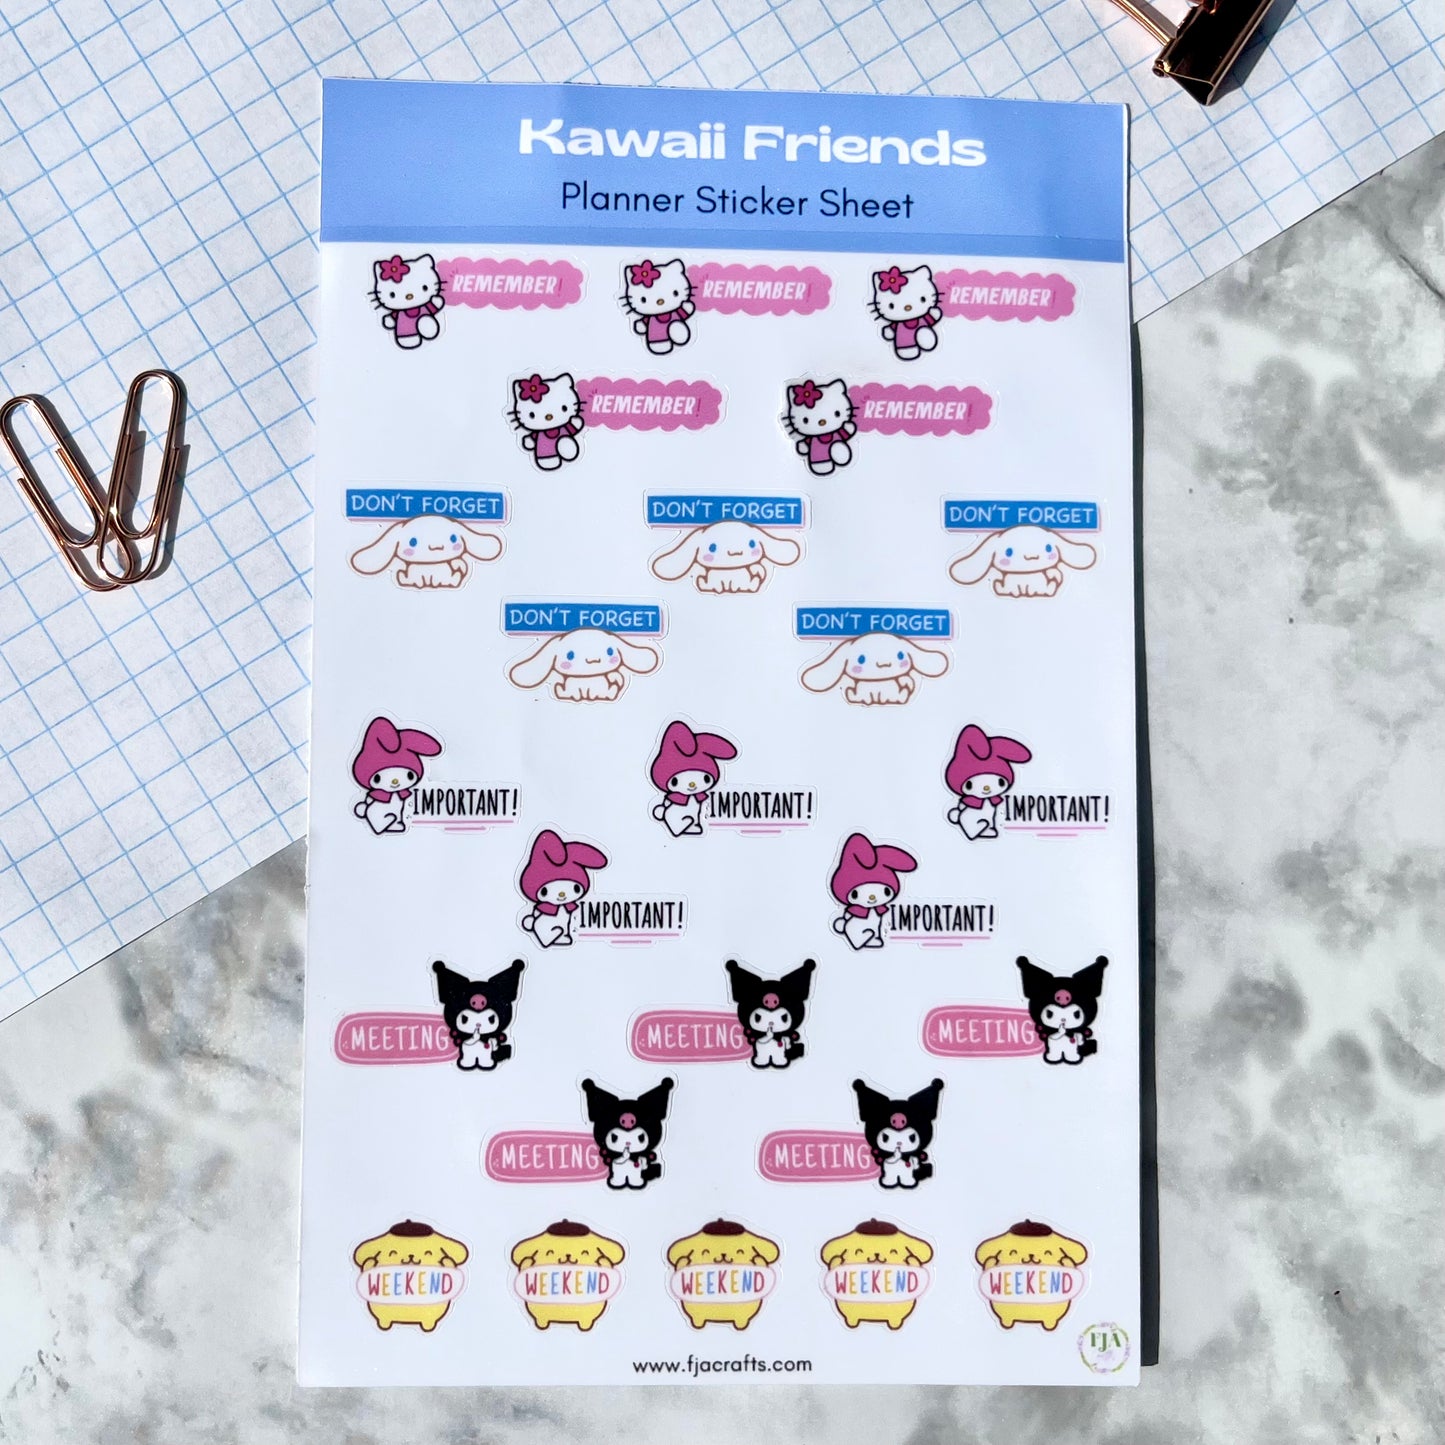 Kawaii Friends Character Planner Sticker Sheet FJA Crafts